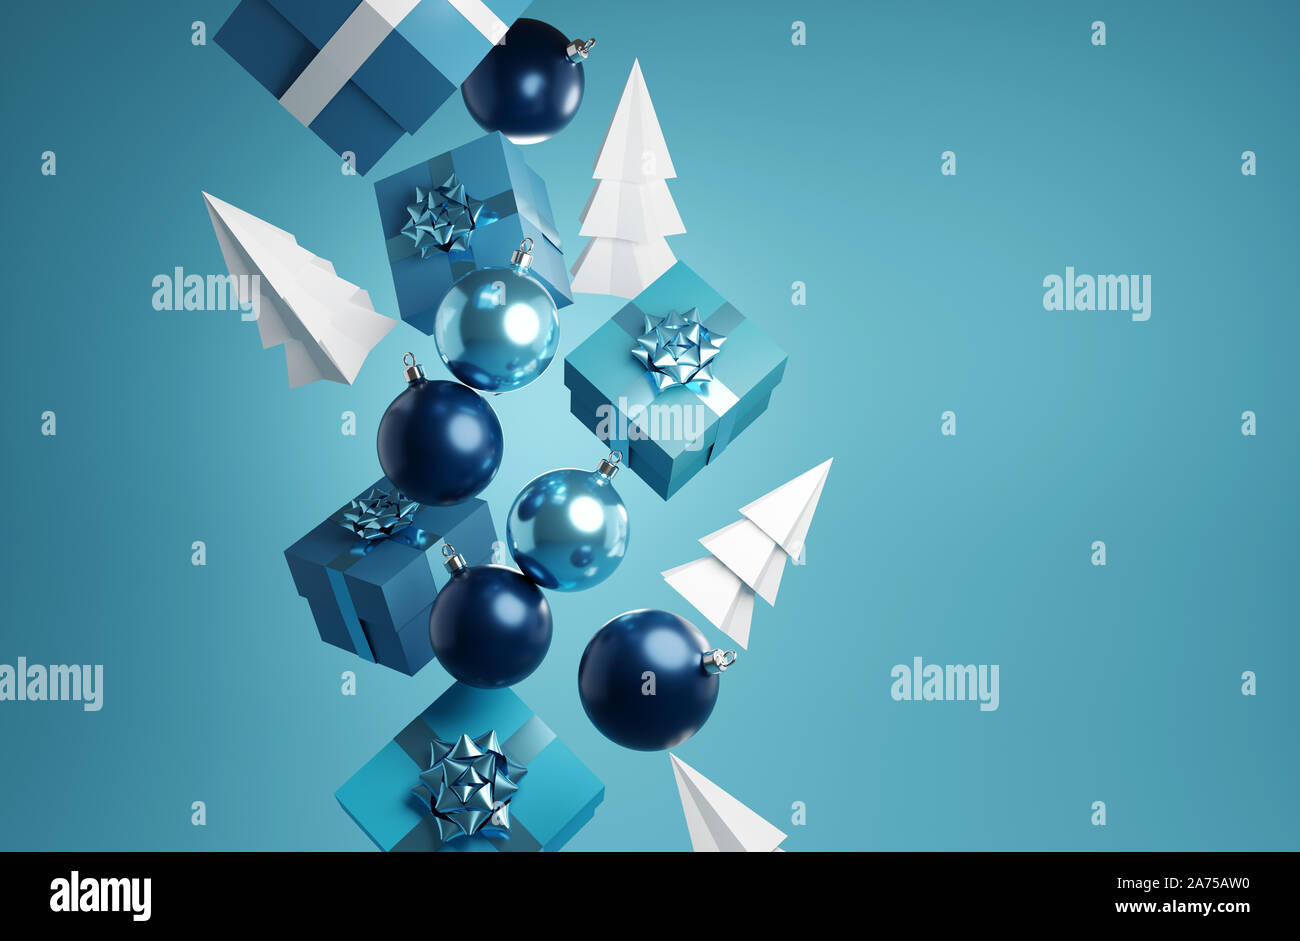 La chute d'éléments de Noël y compris présente, et babioles xmas trees. Abstract 3D illustration festive Banque D'Images